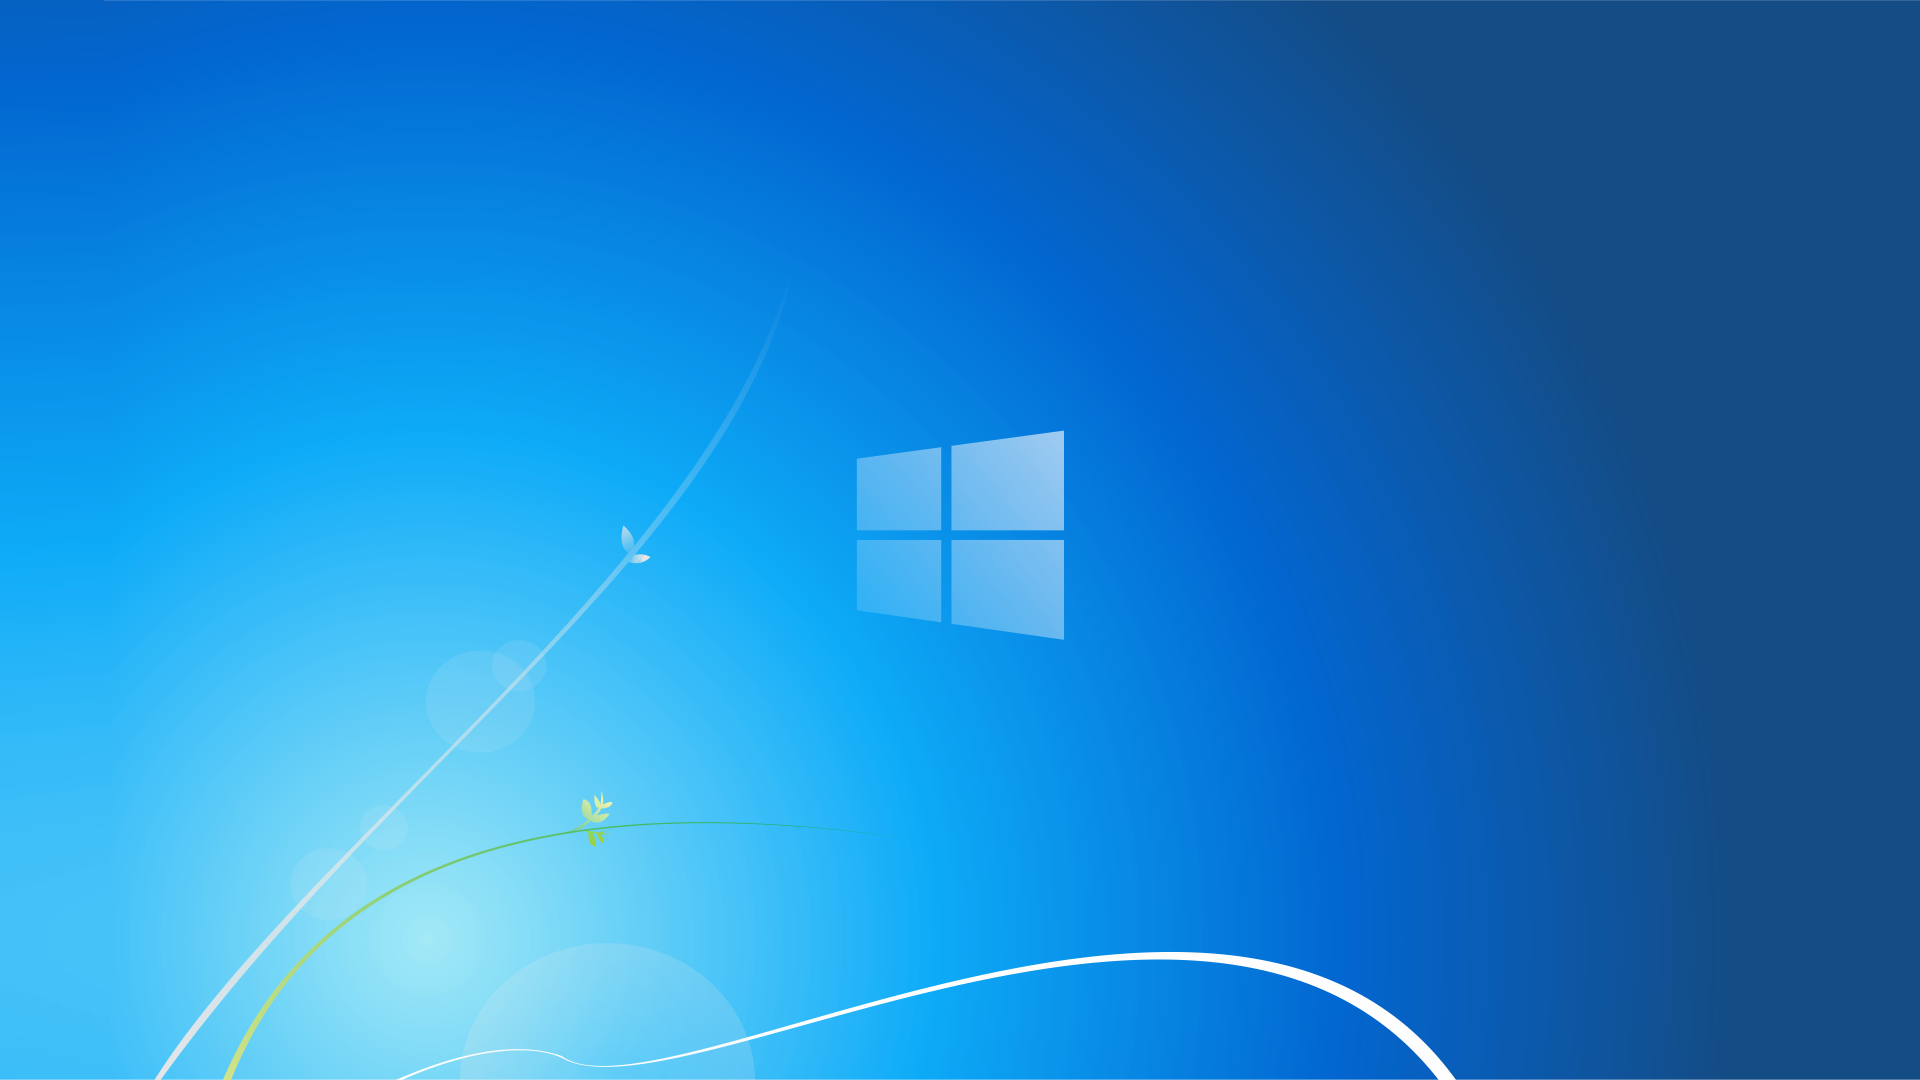 Windows 7 Reimagined Wallpaper. Windows wallpaper, Desktop wallpaper background, Windows vista wallpaper